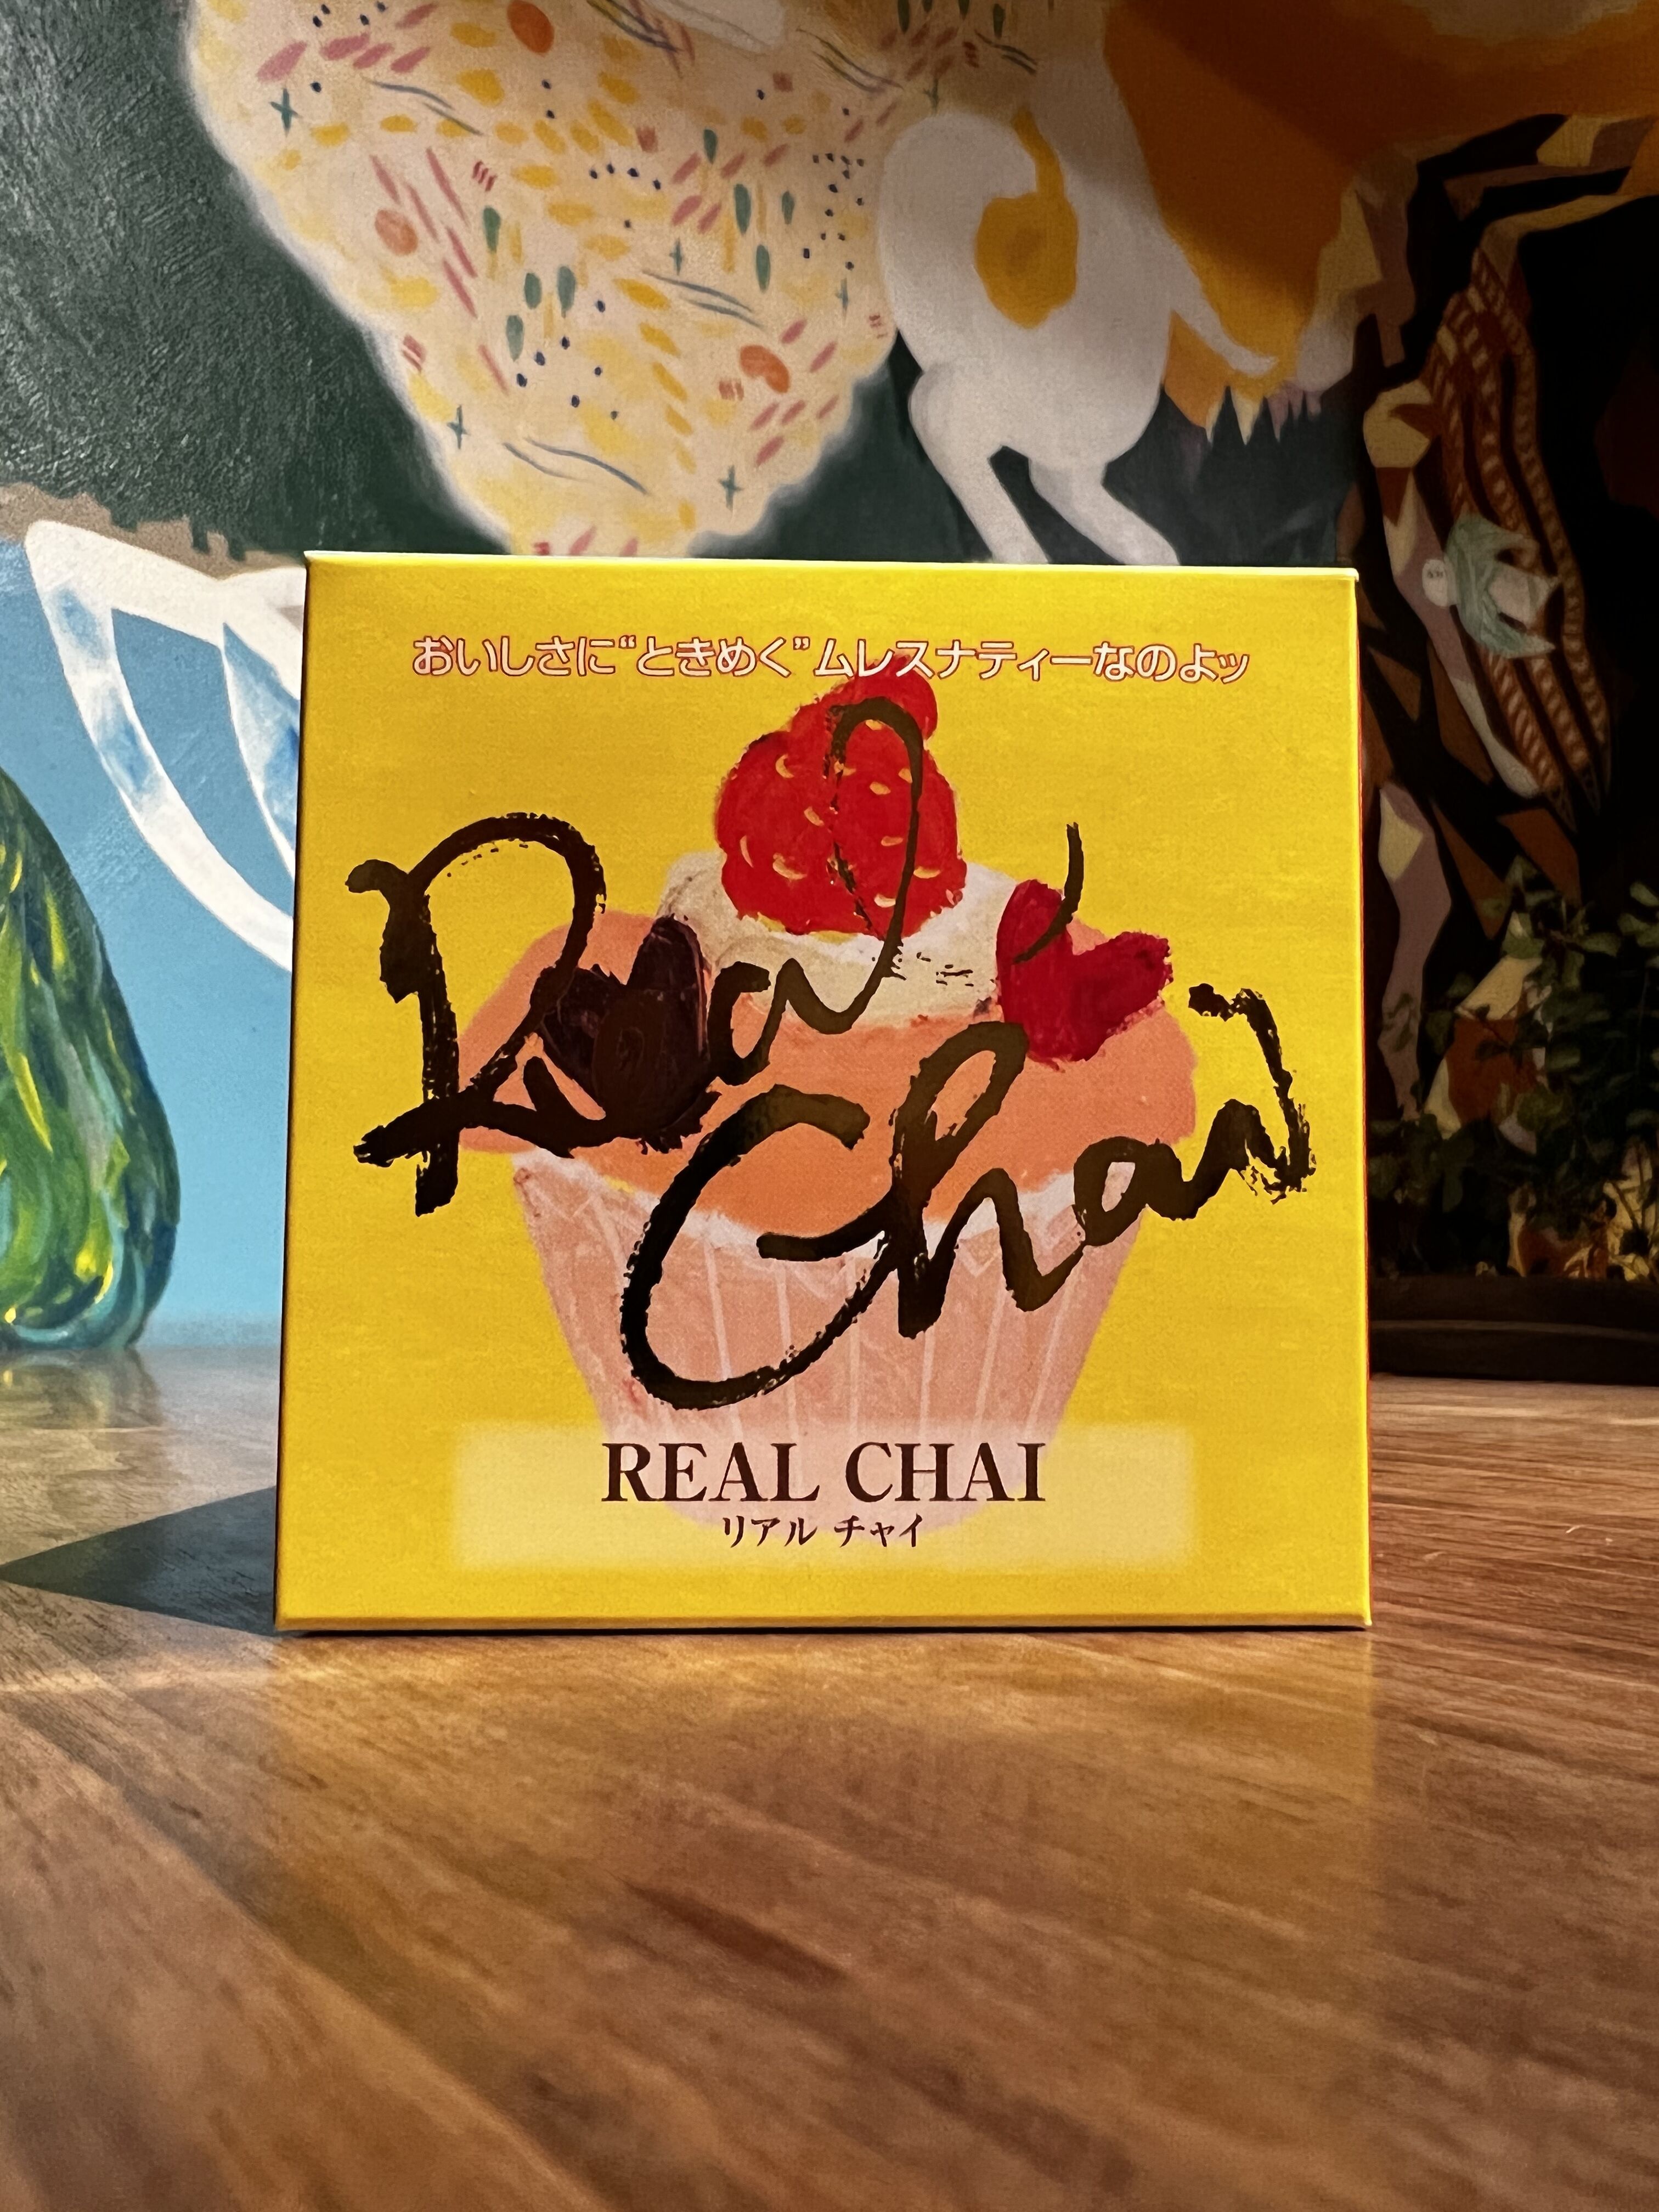 紅茶 ムレスナティー REAL CHAI おいしいケーキに合うおいしいCHAI